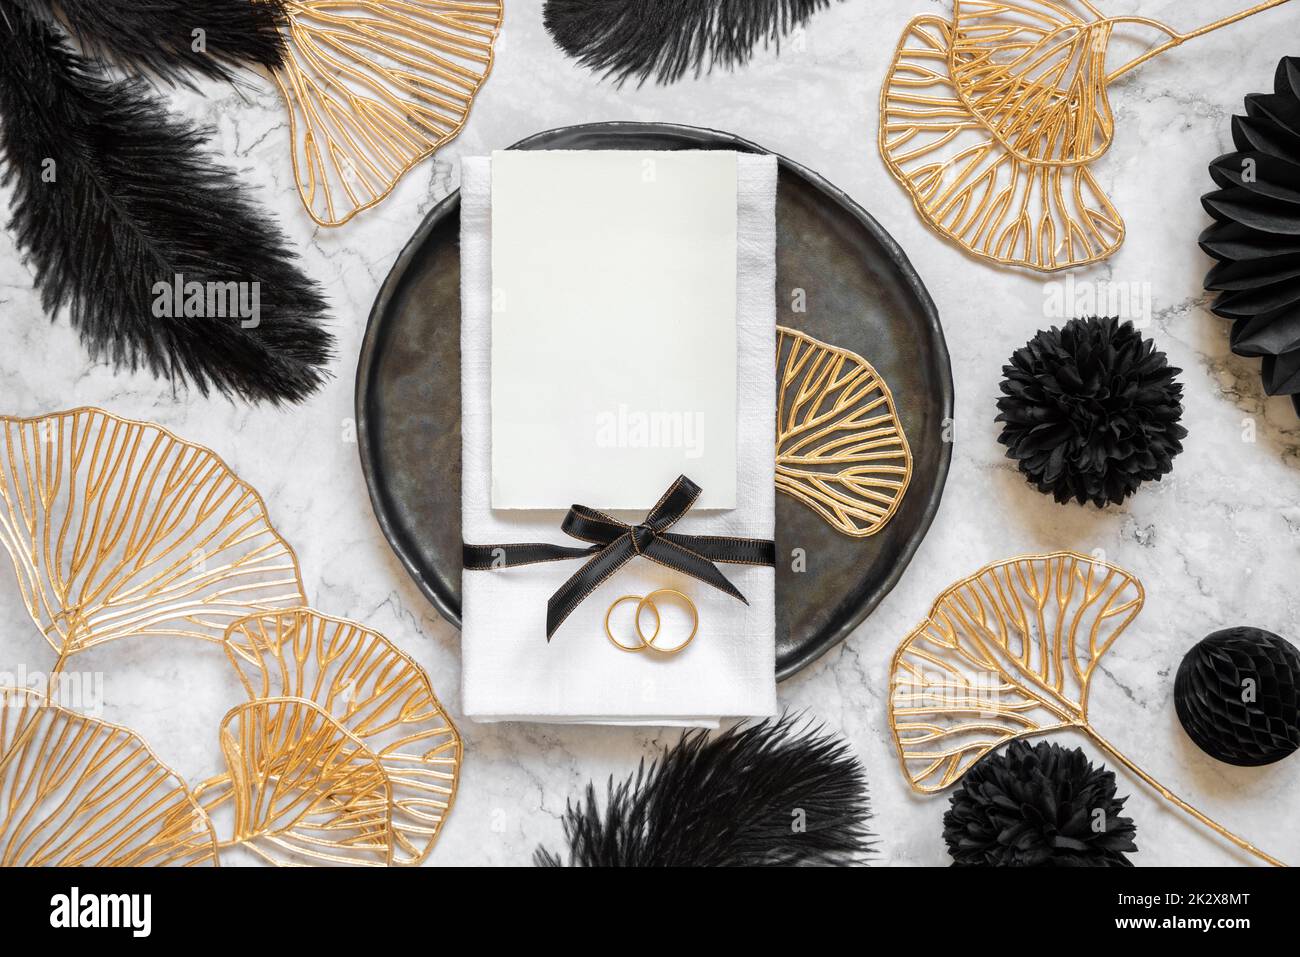 Table de mariage noire et dorée avec une carte vierge et des anneaux vue du dessus, maquette Banque D'Images